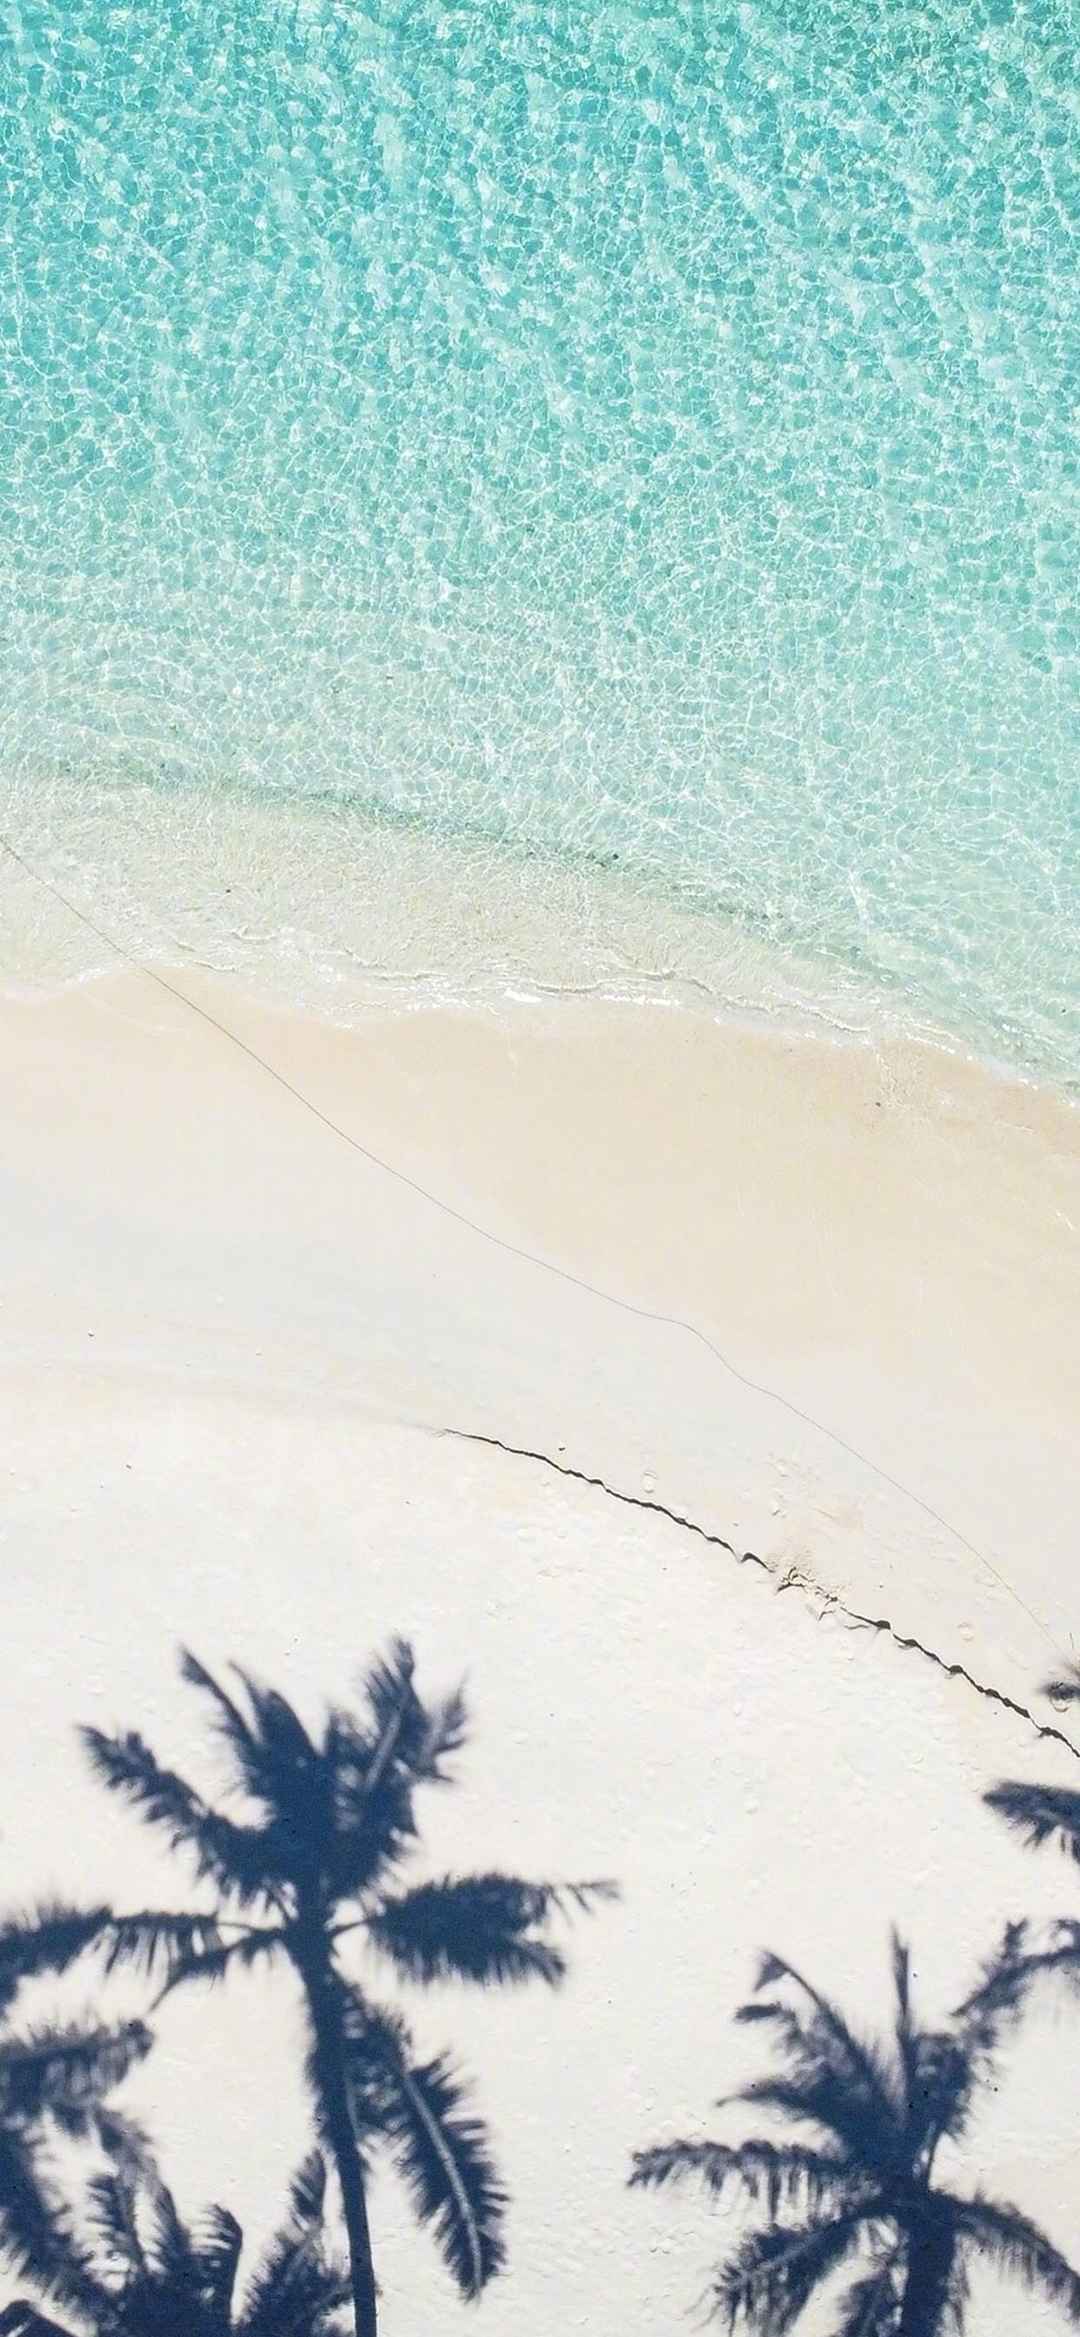 大海沙滩自然风景手机壁纸-